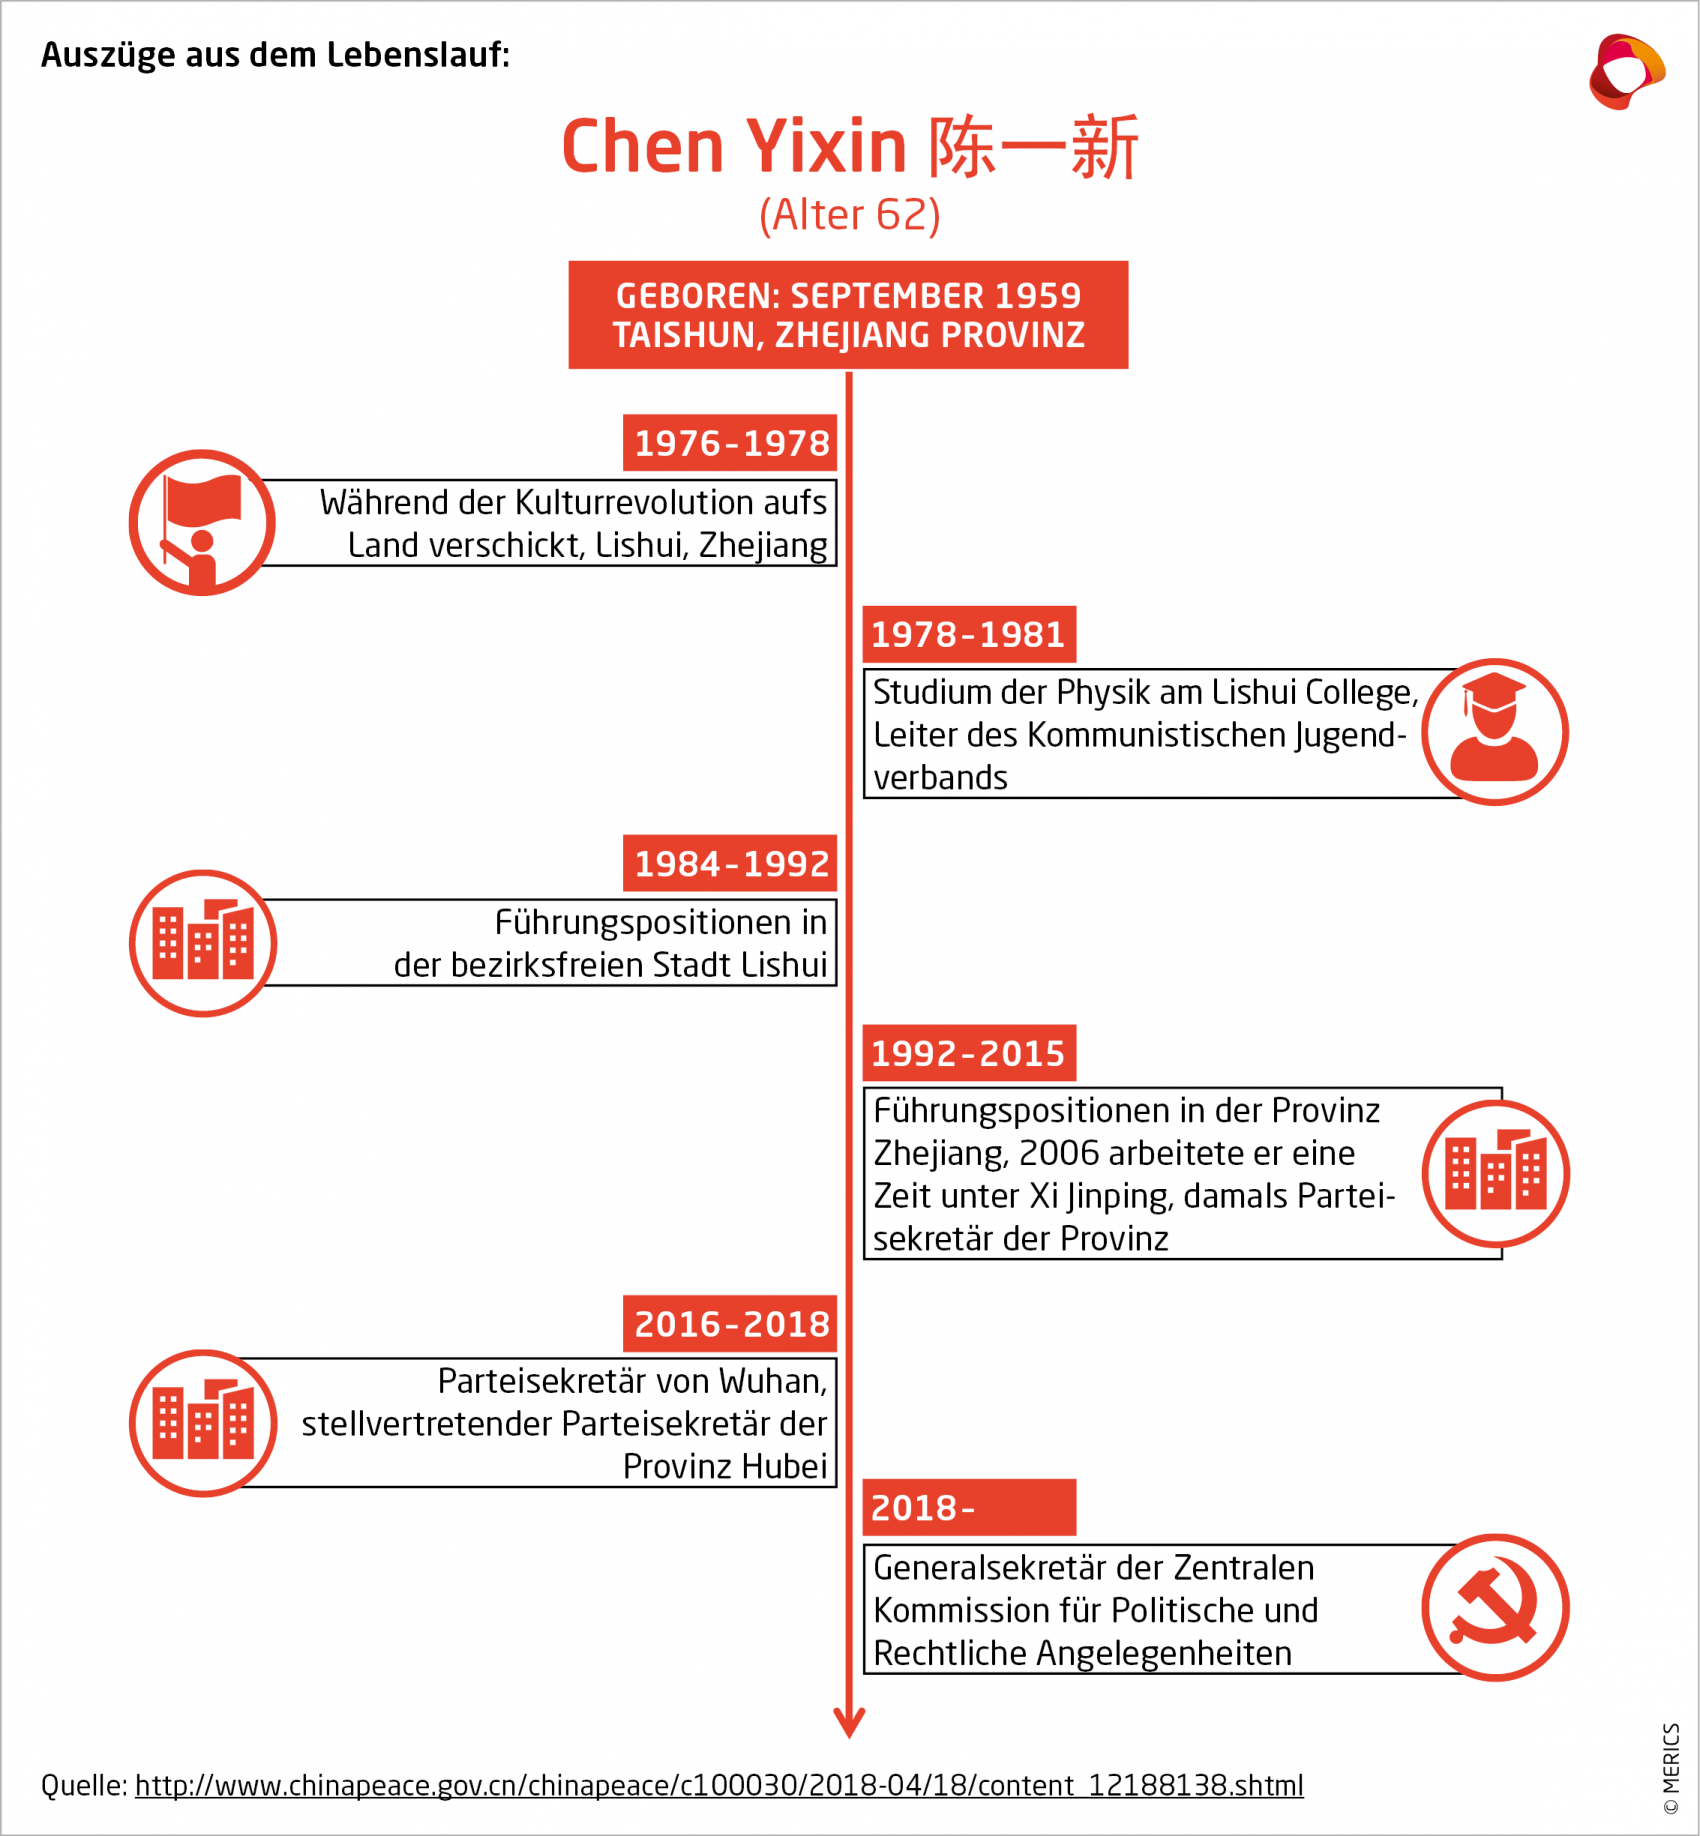 Auszüge aus dem Lebenslauf von Chen Yixin